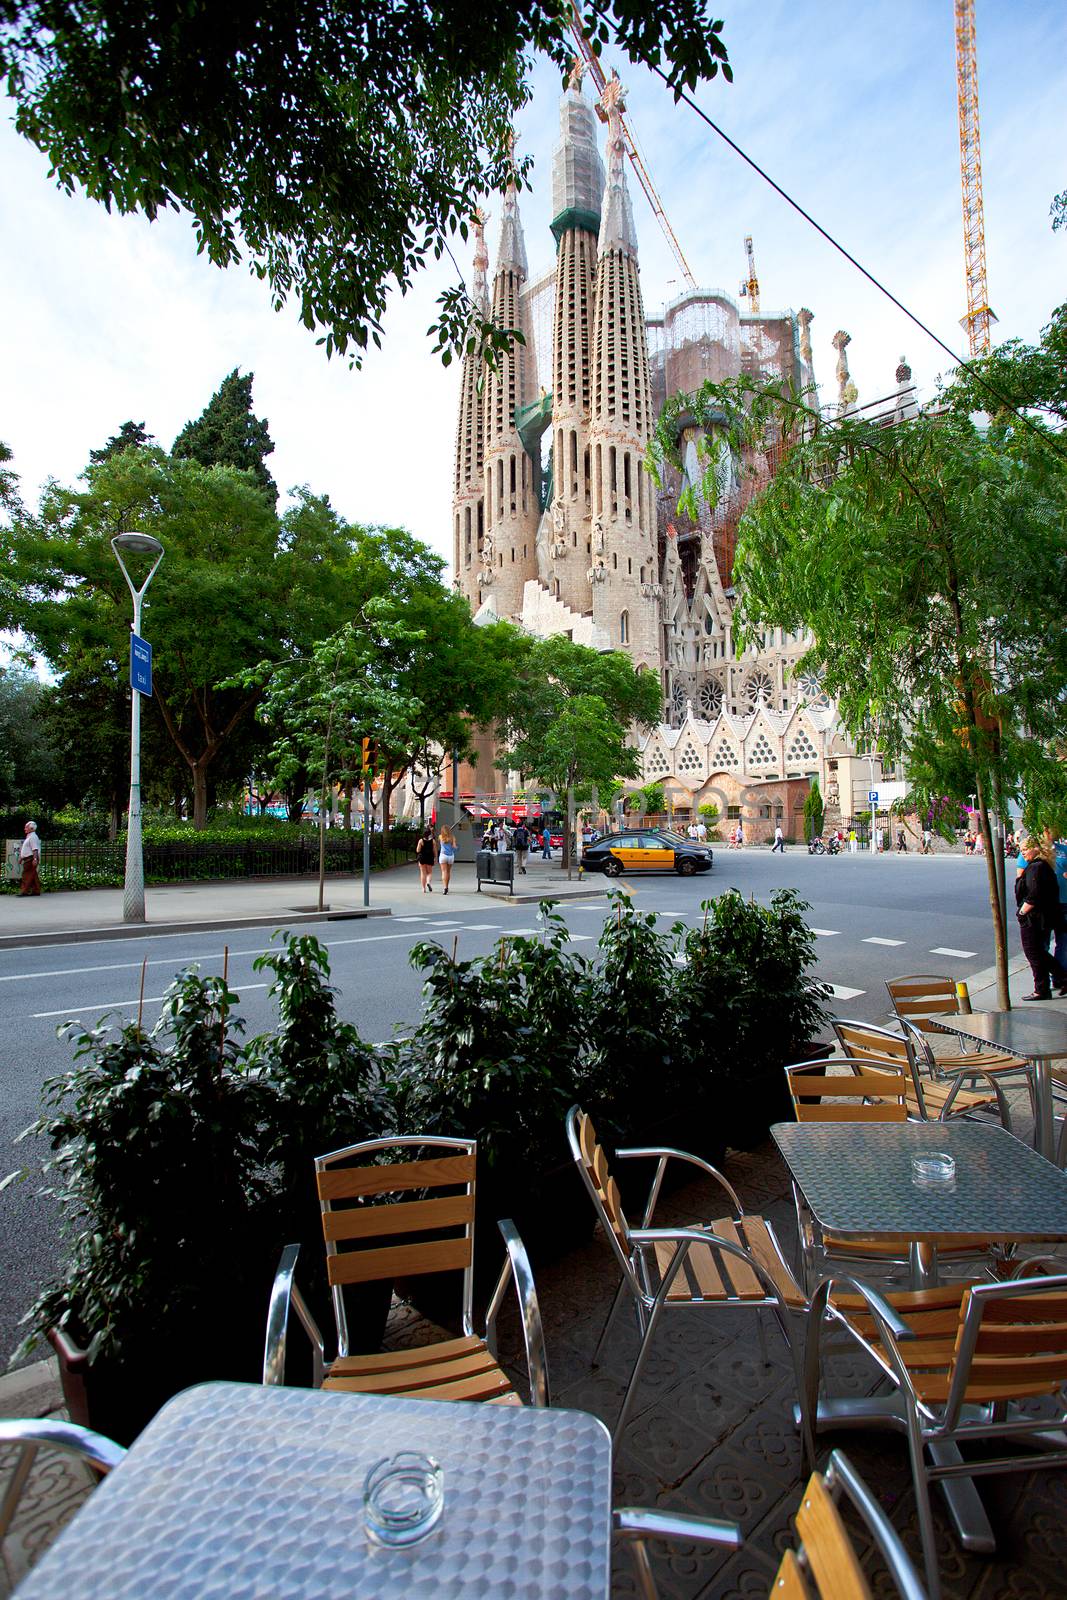 La Sagrada Familia 2013 by Astroid